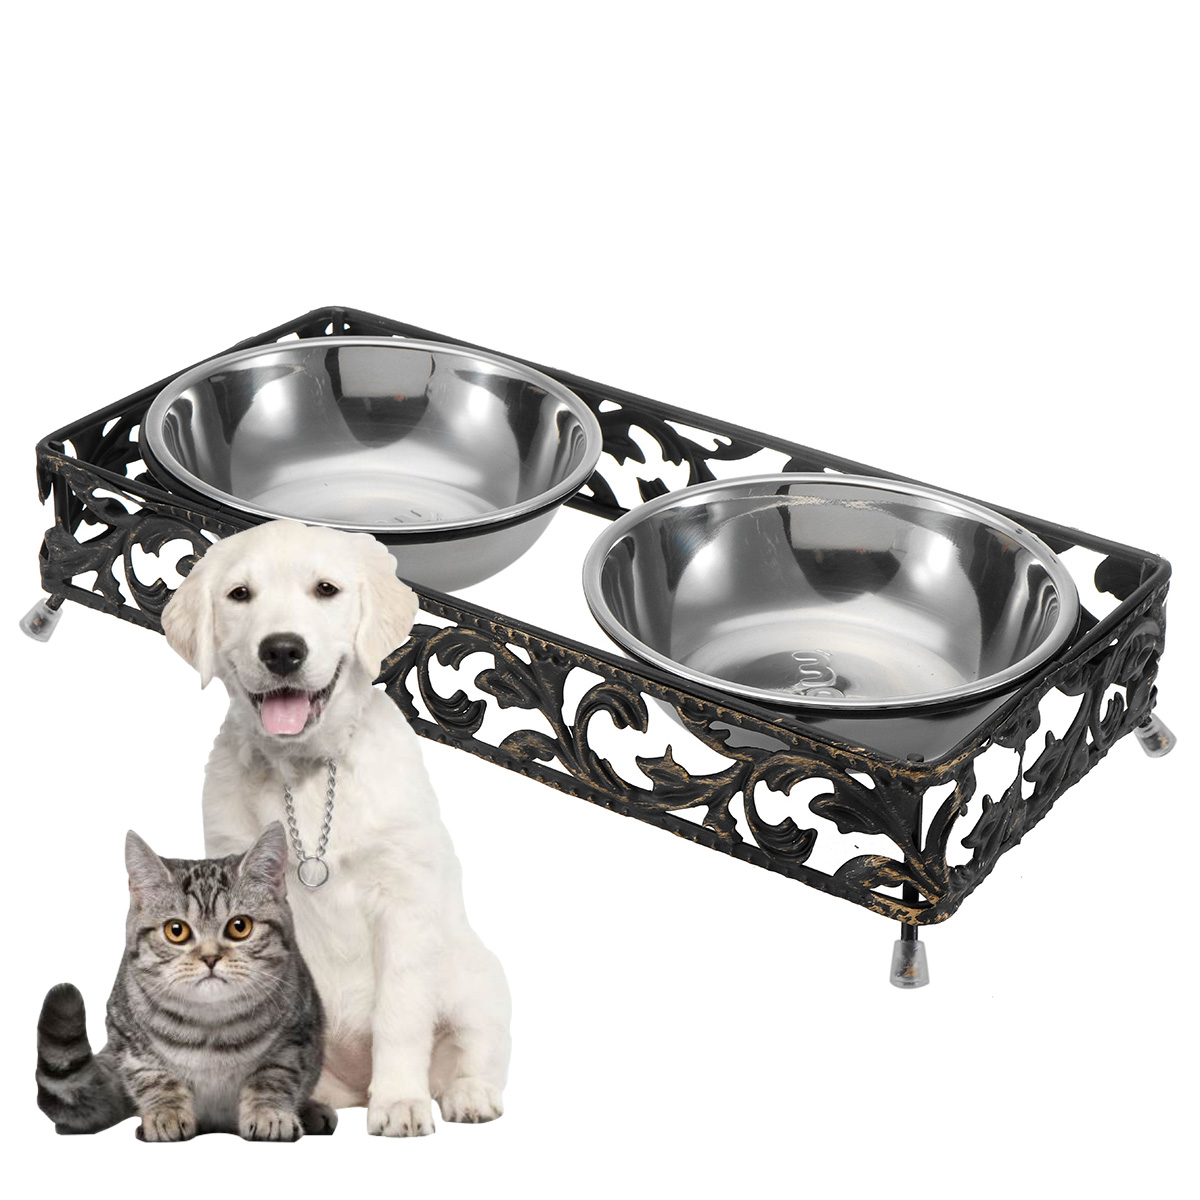 

Двойная миска для домашних животных Собака Кот Подставка для кормления Пищевая вода Из нержавеющей стали Прочная чаша